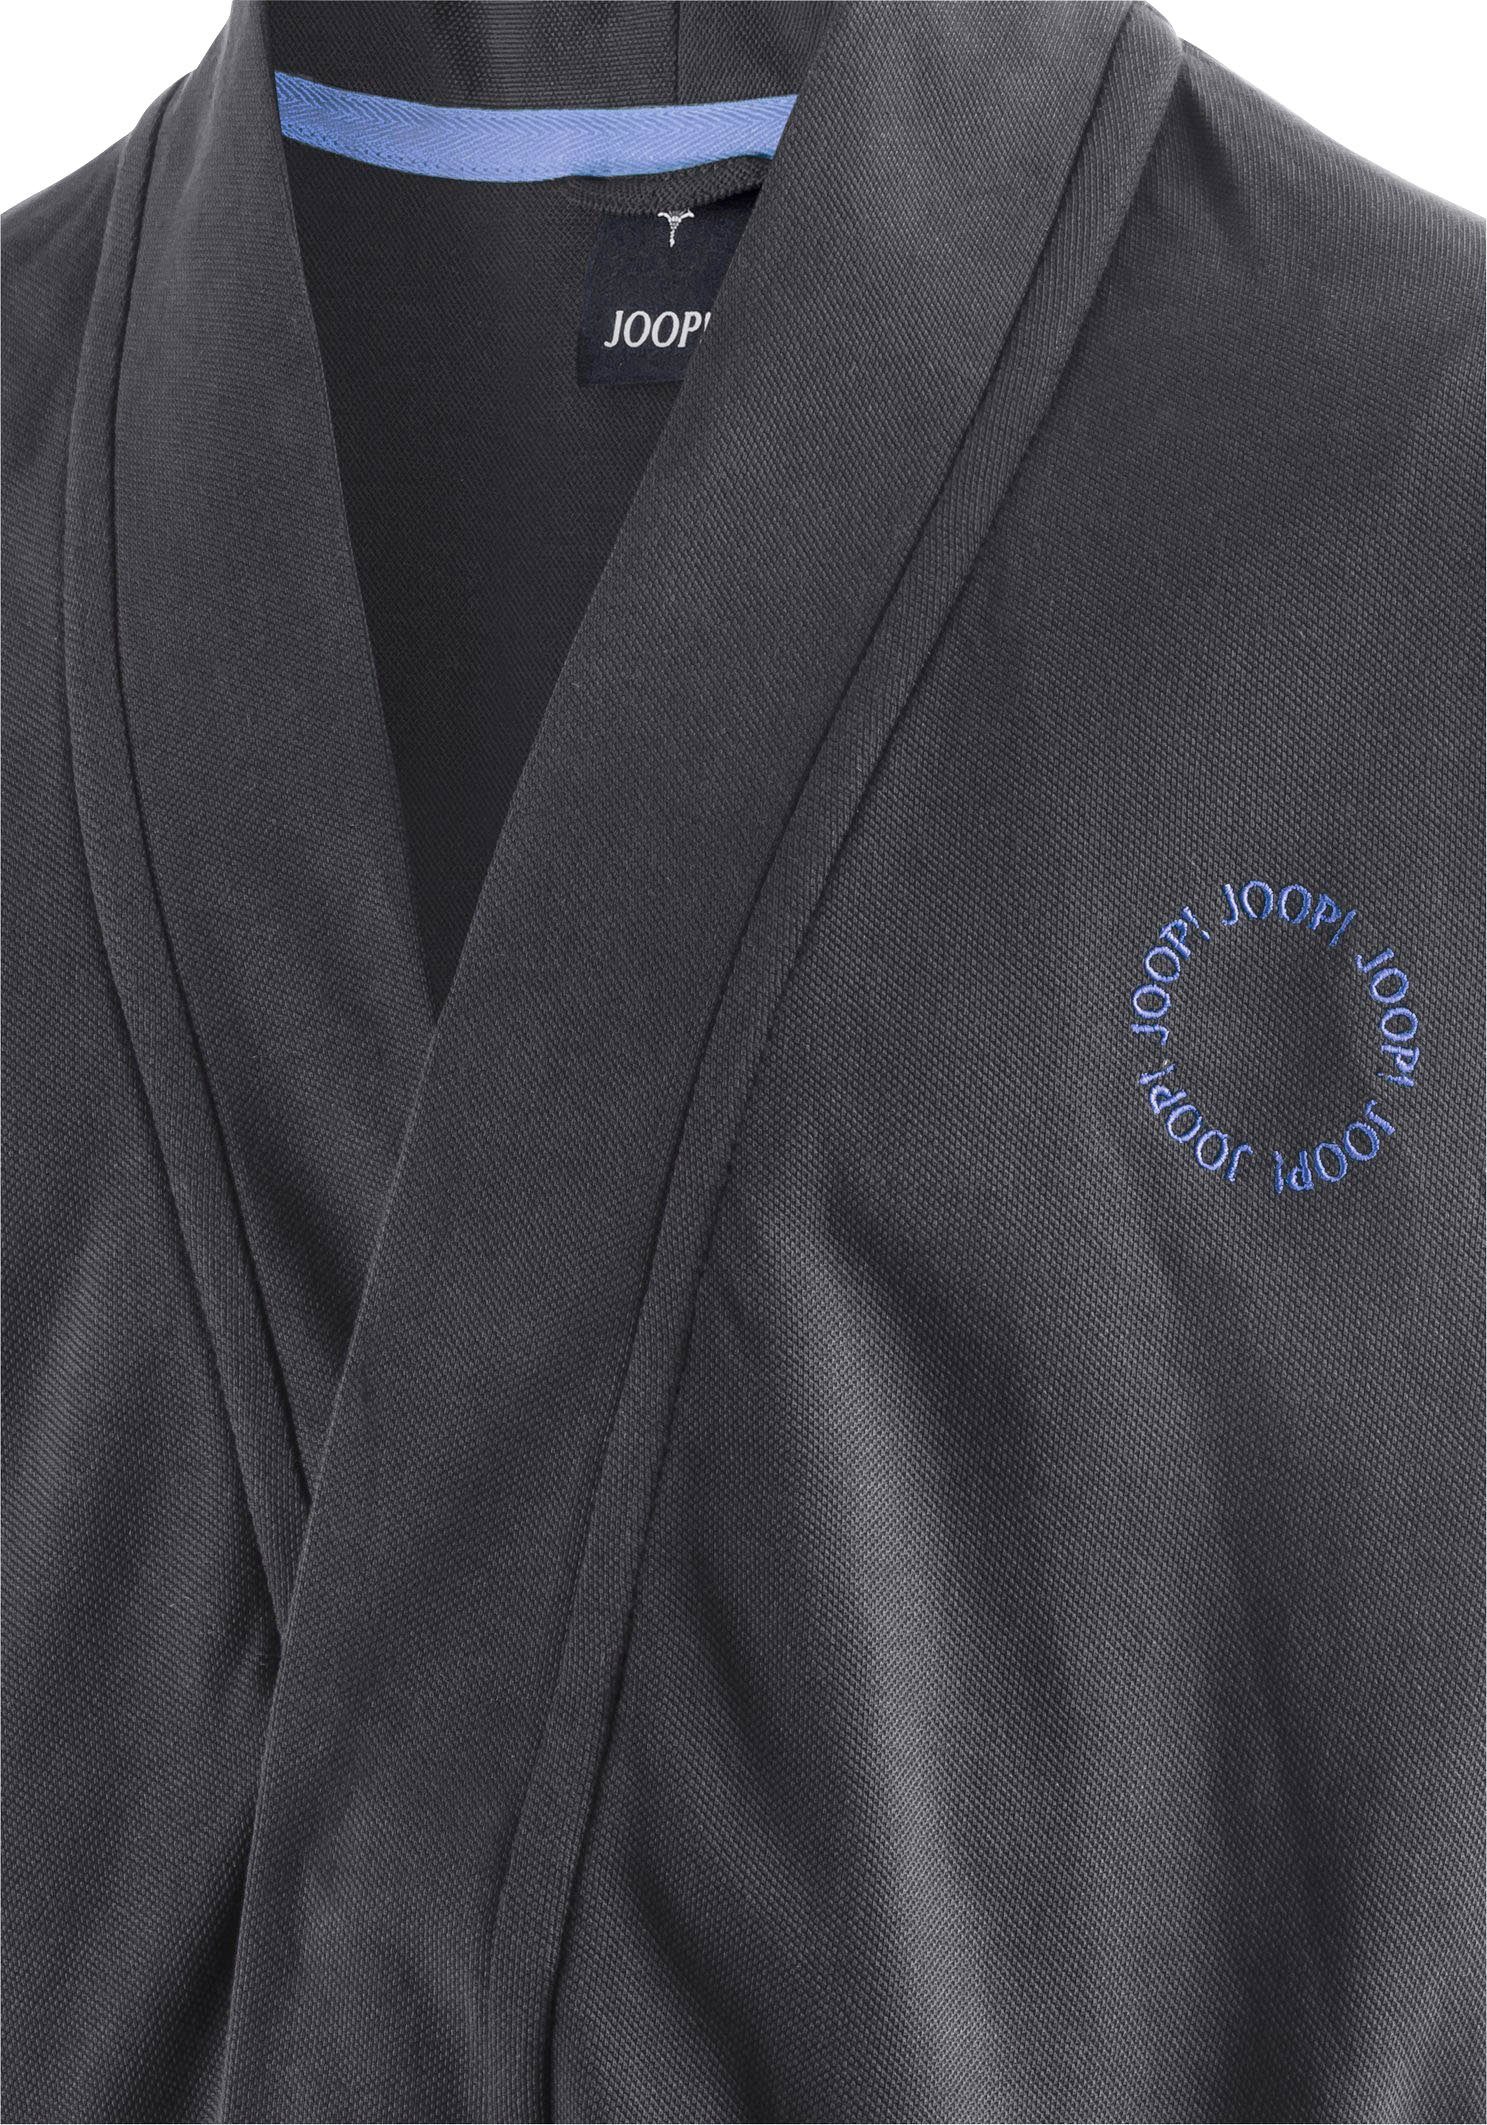 Joop! Kimono BEACH CAPSULE, Kurzform, Baumwolle, Kimono-Kragen, Gürtel, Aus  100% Baumwolle in leichter Piqué-Qualität gefertigt